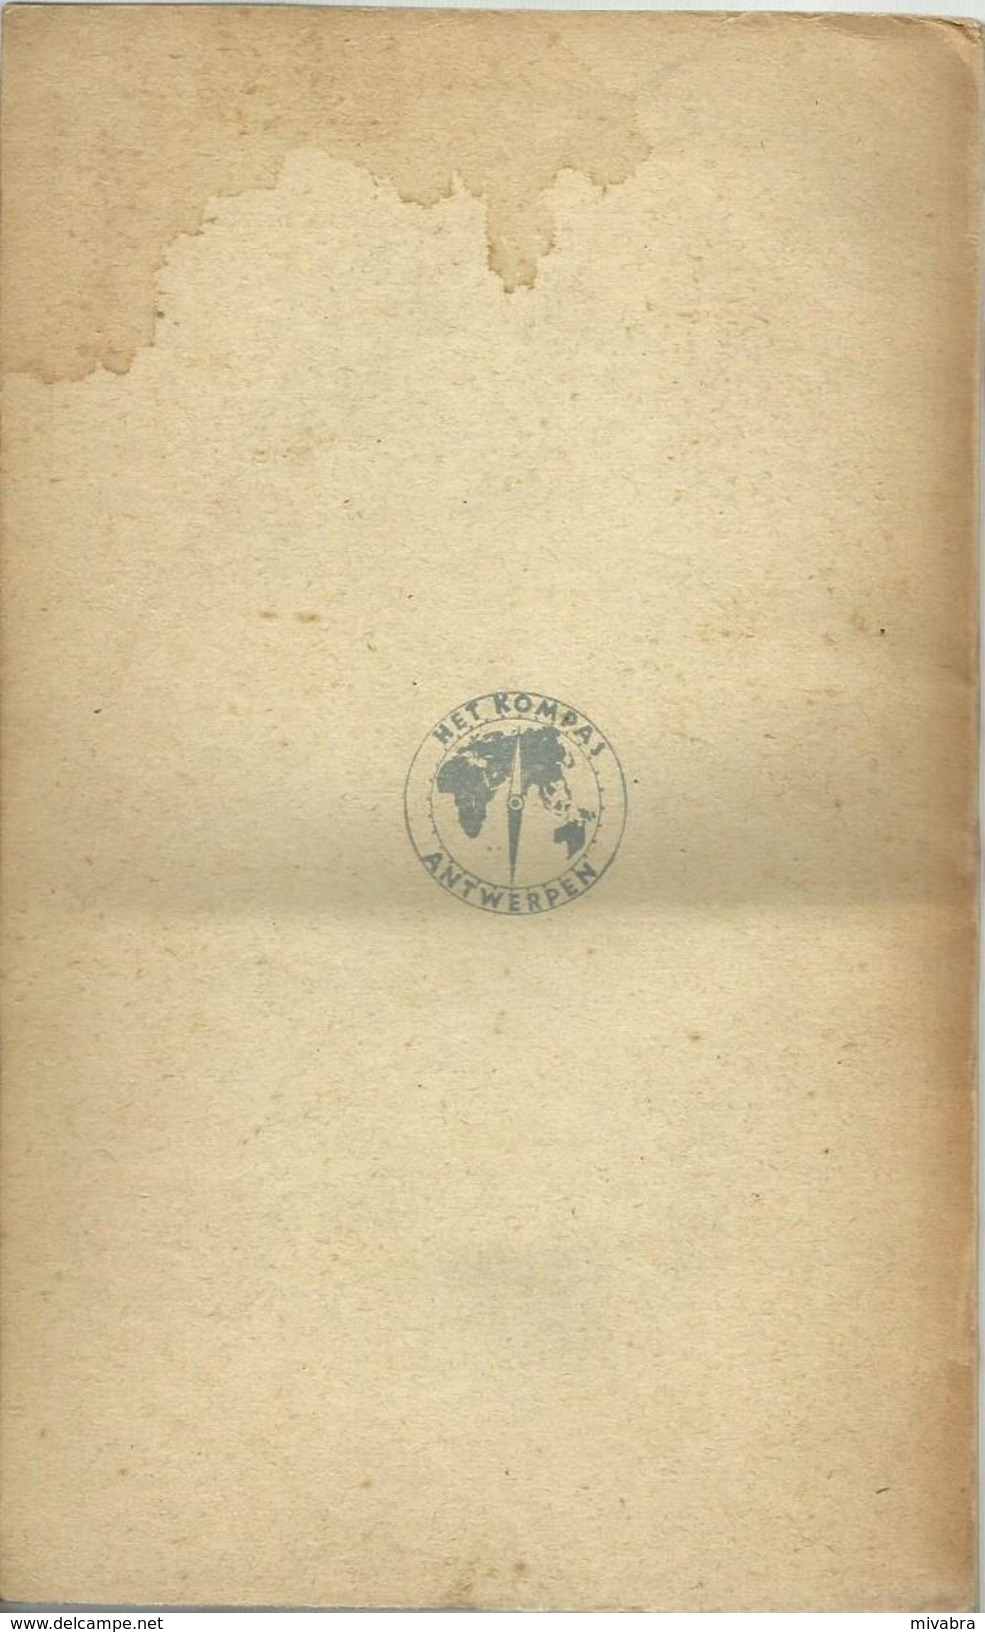 REEDERIJ WATERMAN - JOHAN VAN DER WOUDE - DE FENIKS 1947 - 1e Boek In De 14e Letterkundige Reeks - HET KOMPAS ANTWERPEN - Antique